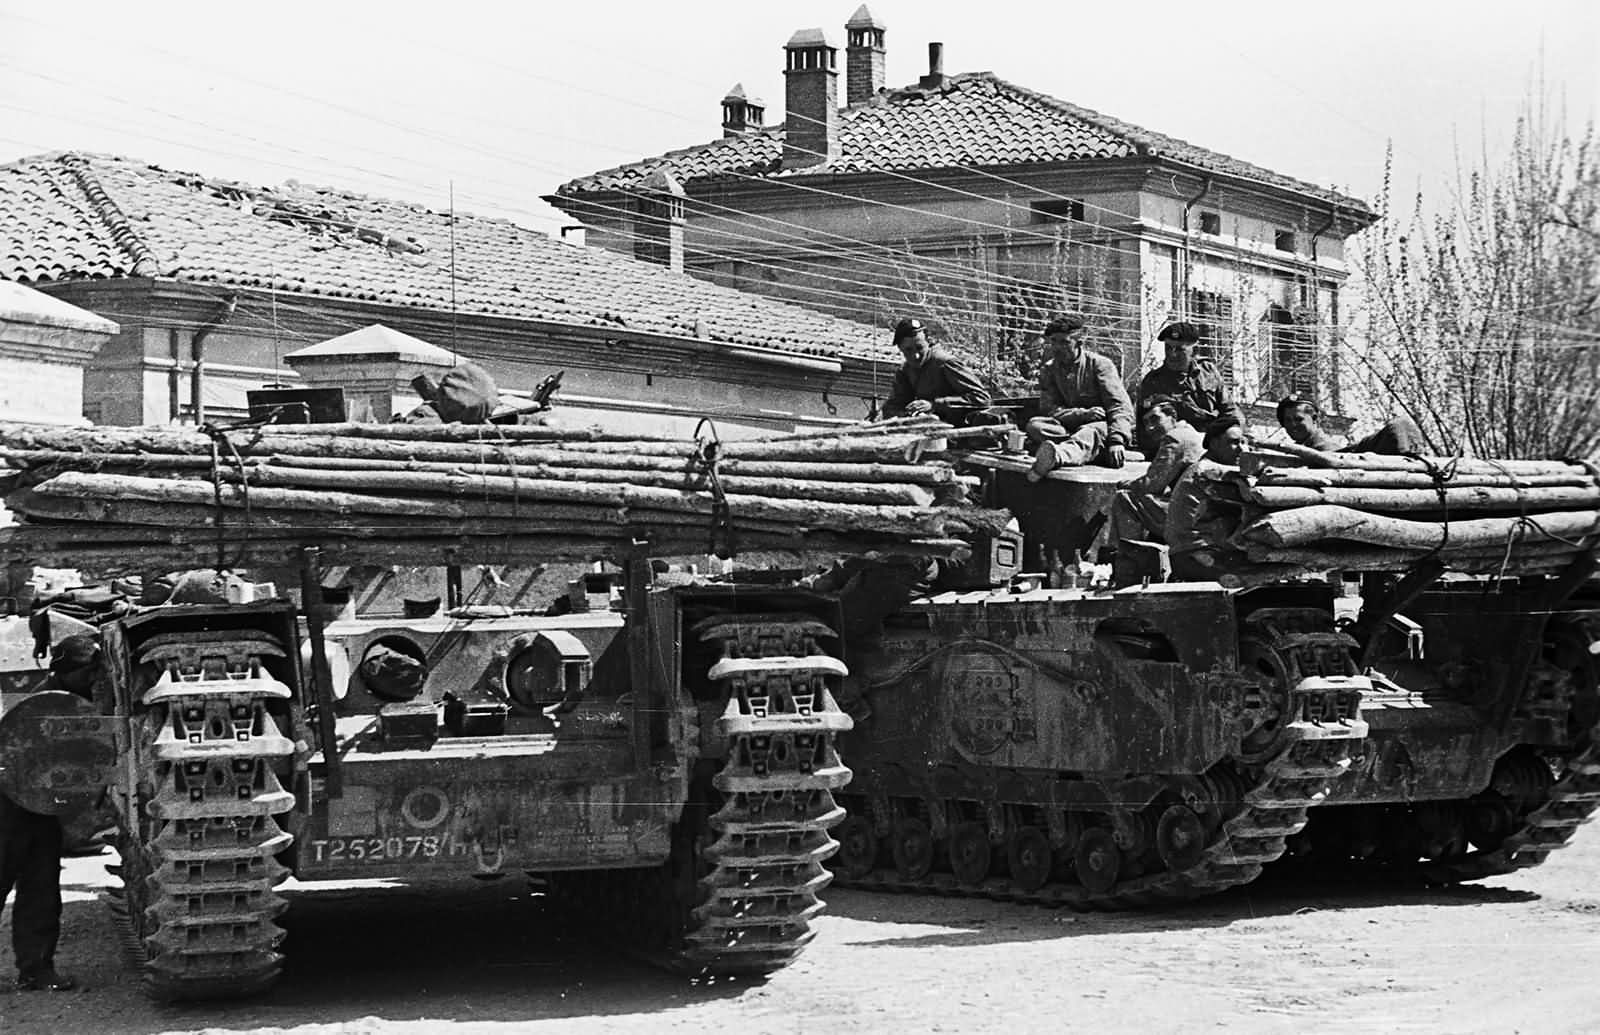 Flame throwing tanks Churchill Mk VII Crocodiles wait in Granarolo dell’Emilia Italy April 1945